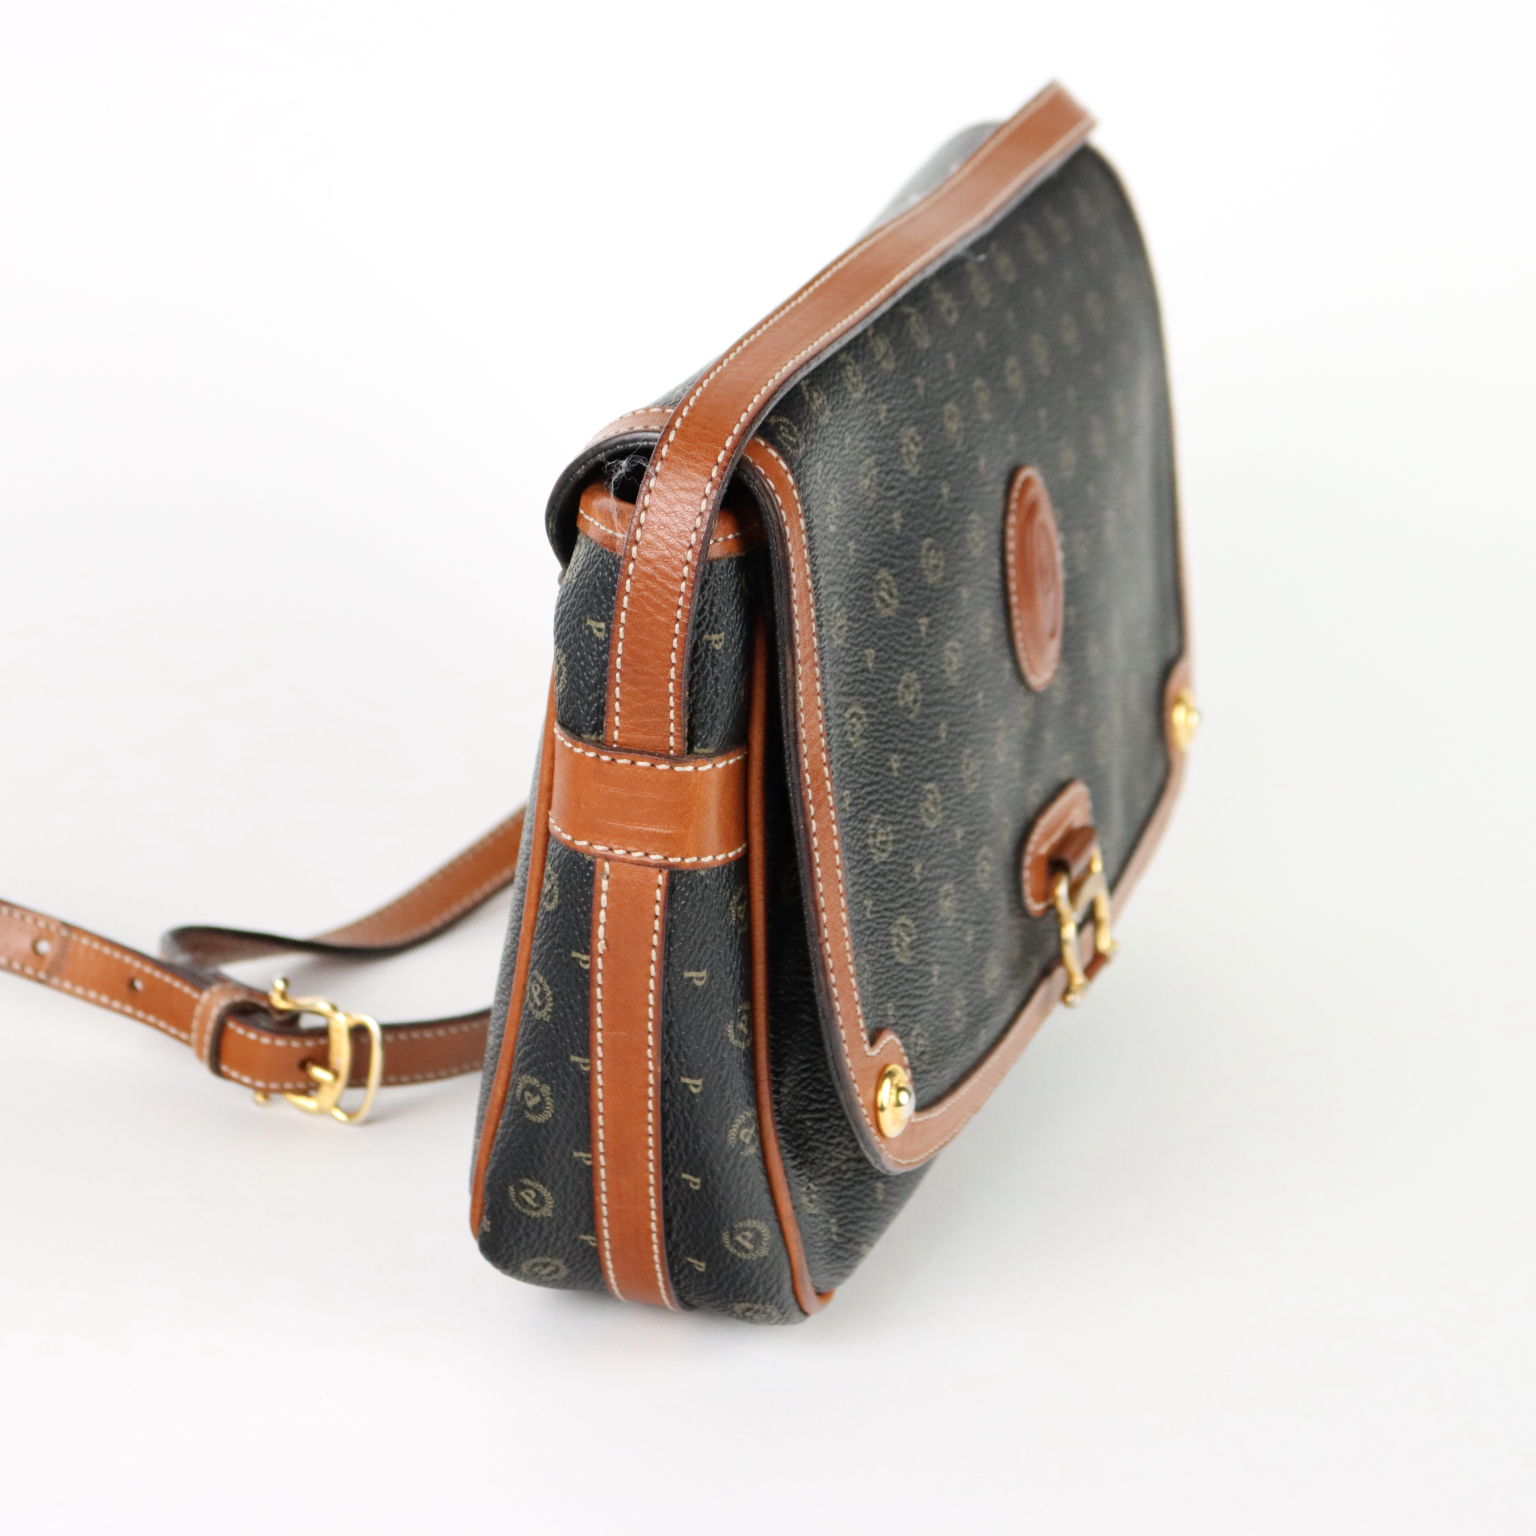 Borsa Pollini Handbag Bourse Vintage Tracolla Pollini | eBay